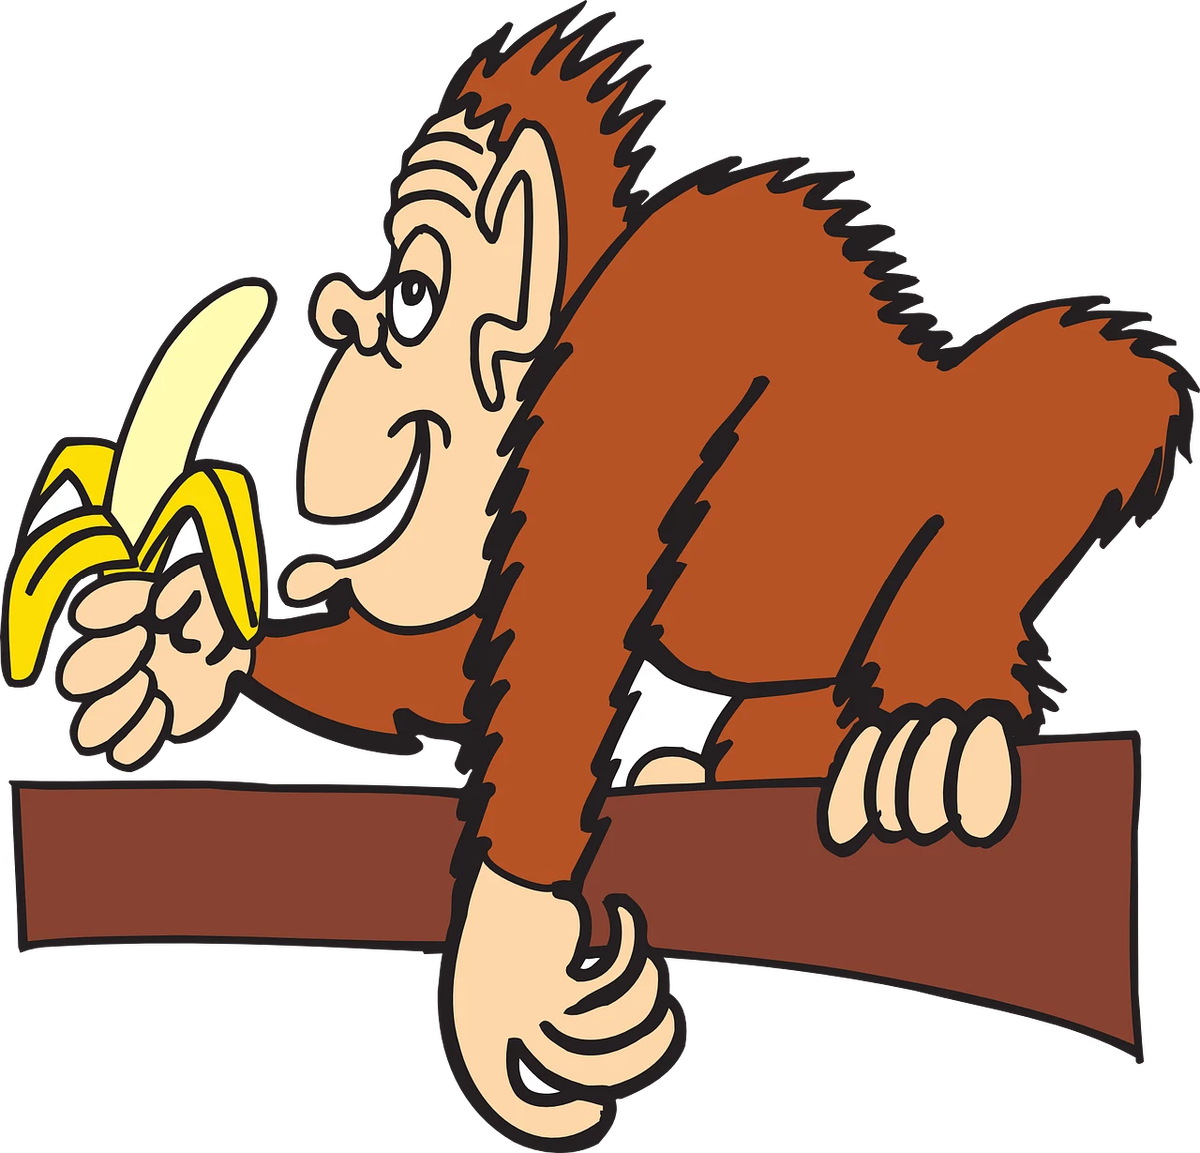 Обезьяна ест банан. Мартышка ест банан. Обезьяна с бананом. Обезьяна с бананом картинки. Про обезьян и бананы